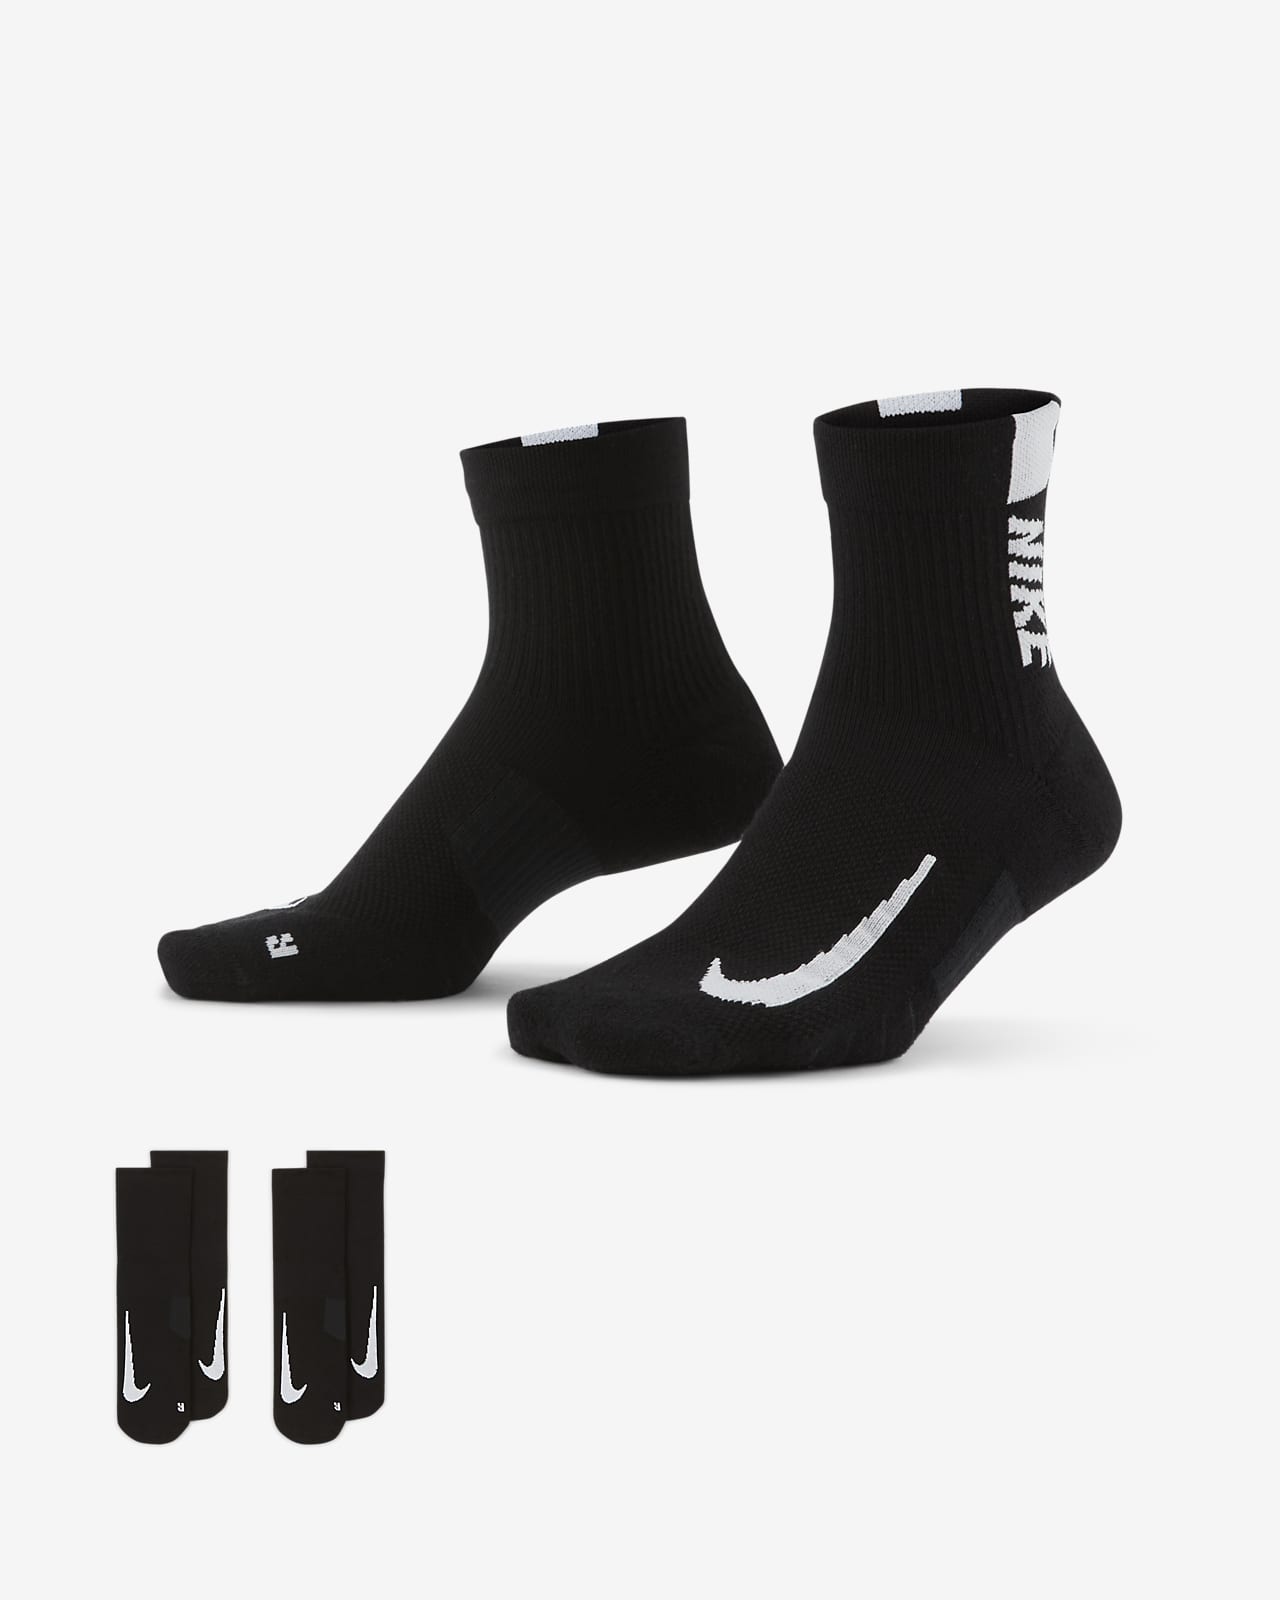 Nike Multiplier Running Ankle Socks (2 Pairs)